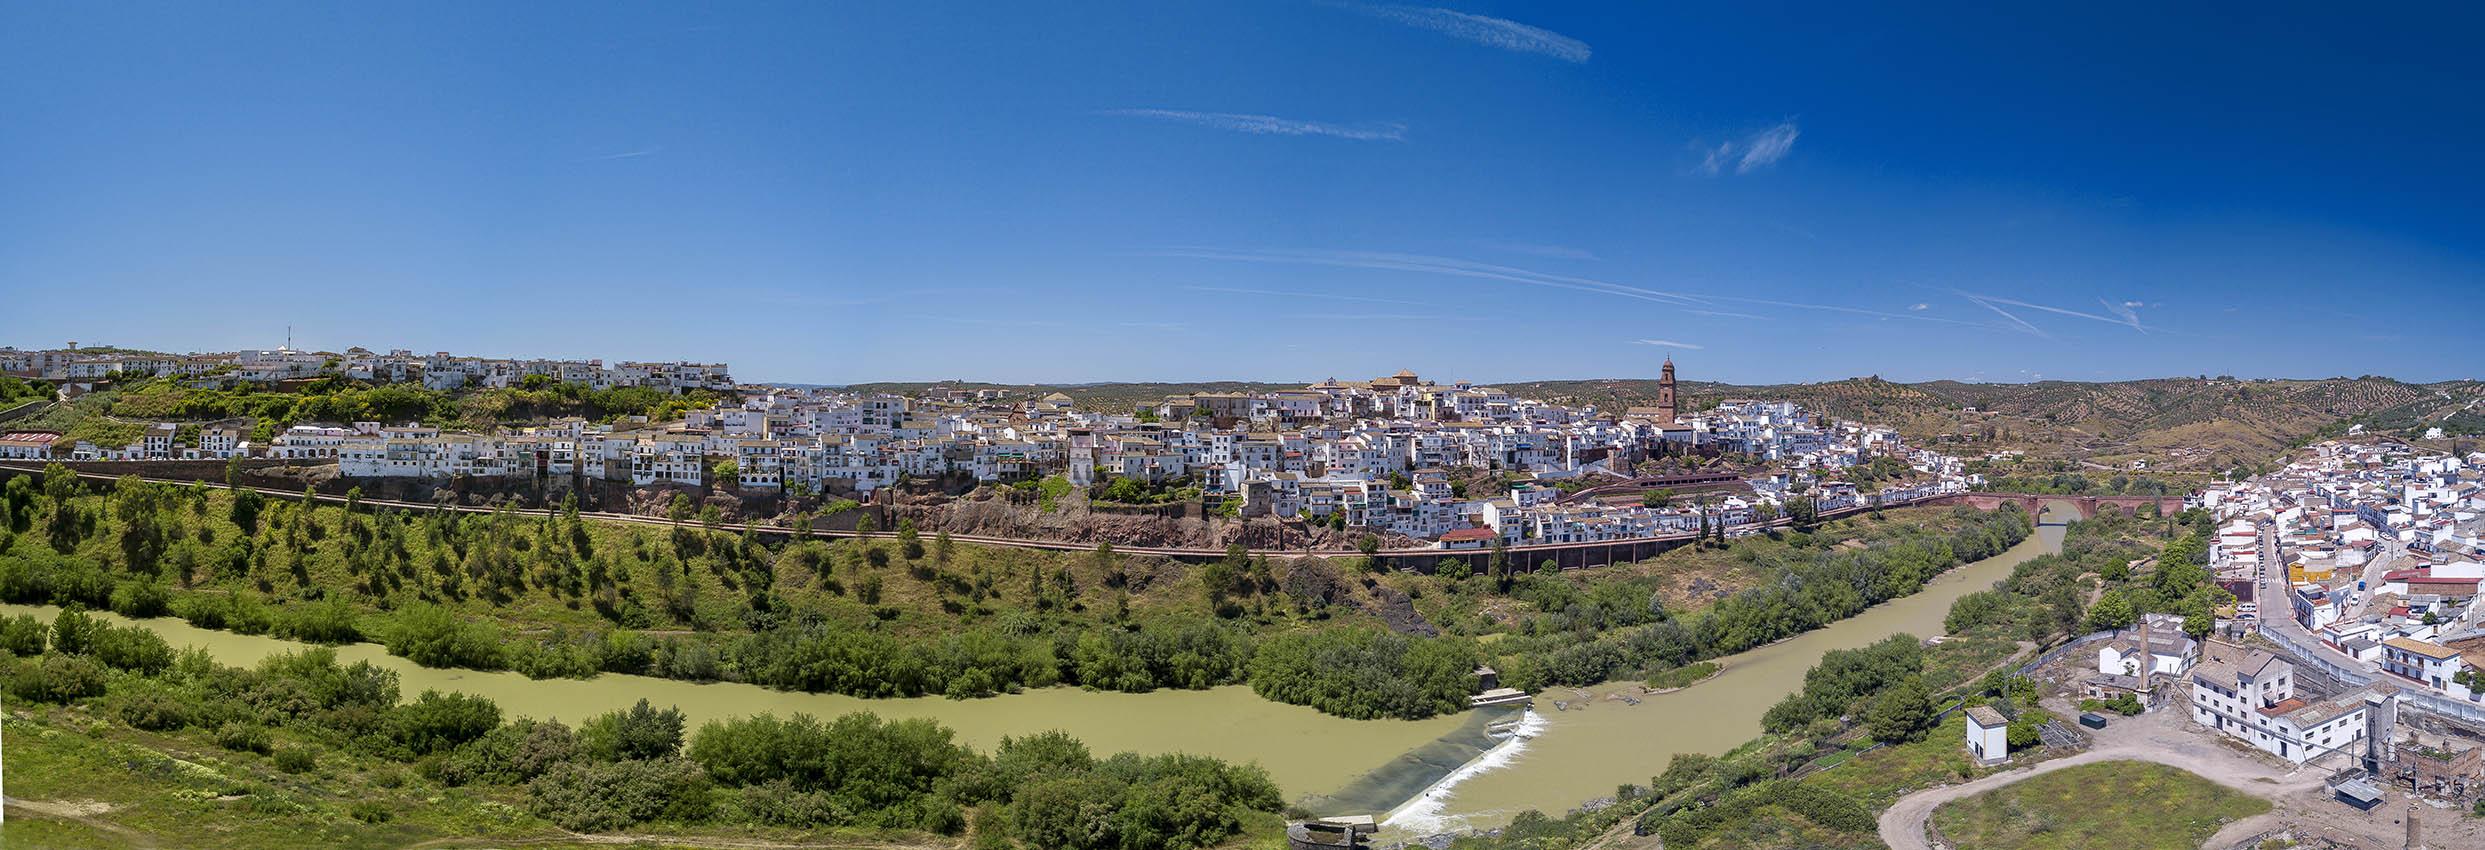 Montoro (Córdoba), localidad española que ha batido el récord de temperatura